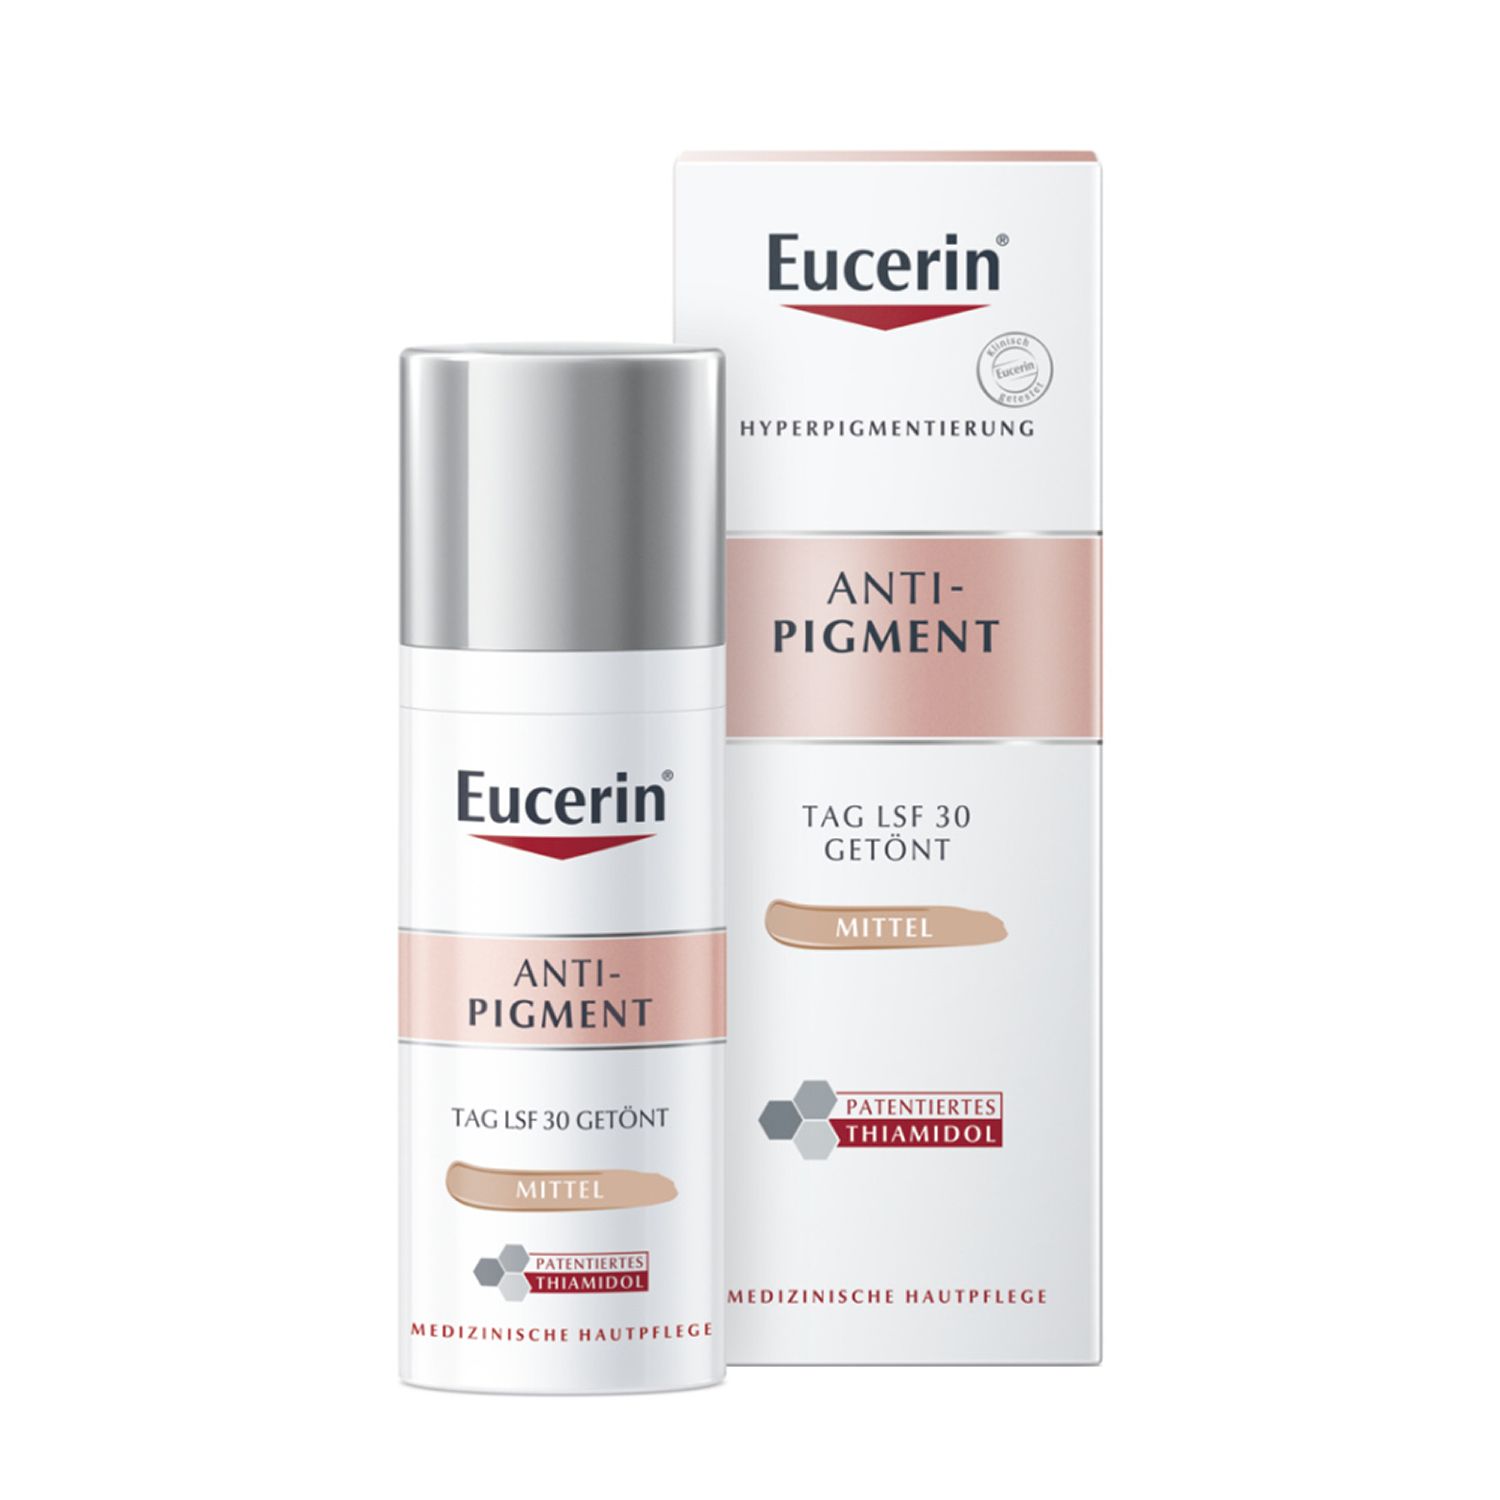 Eucerin® Anti-Pigment Tag LSF 30 Getönt Mittel